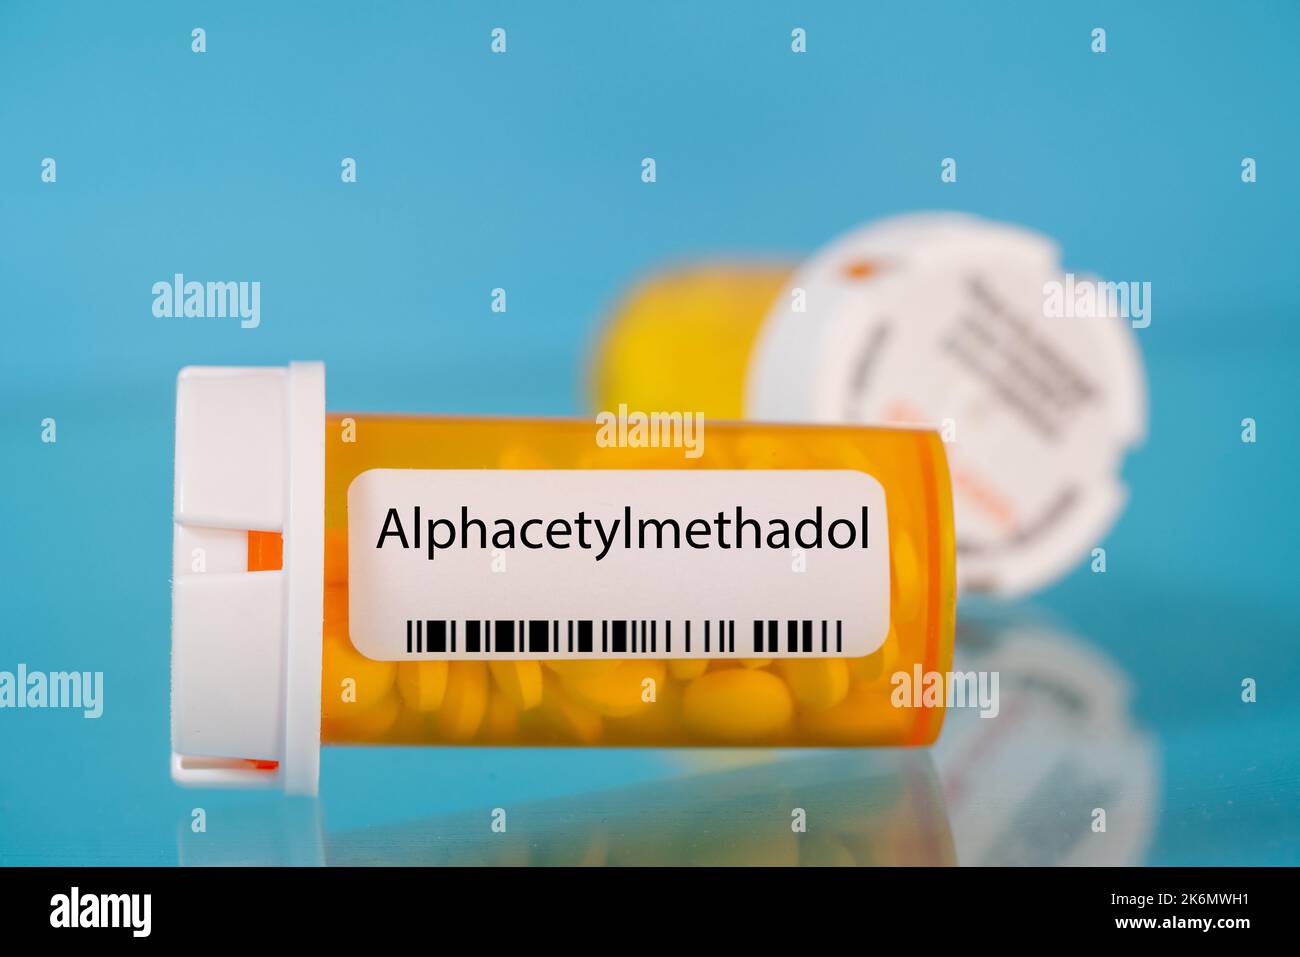 Alphacétylméthadol flacon de pilule, image conceptuelle Banque D'Images